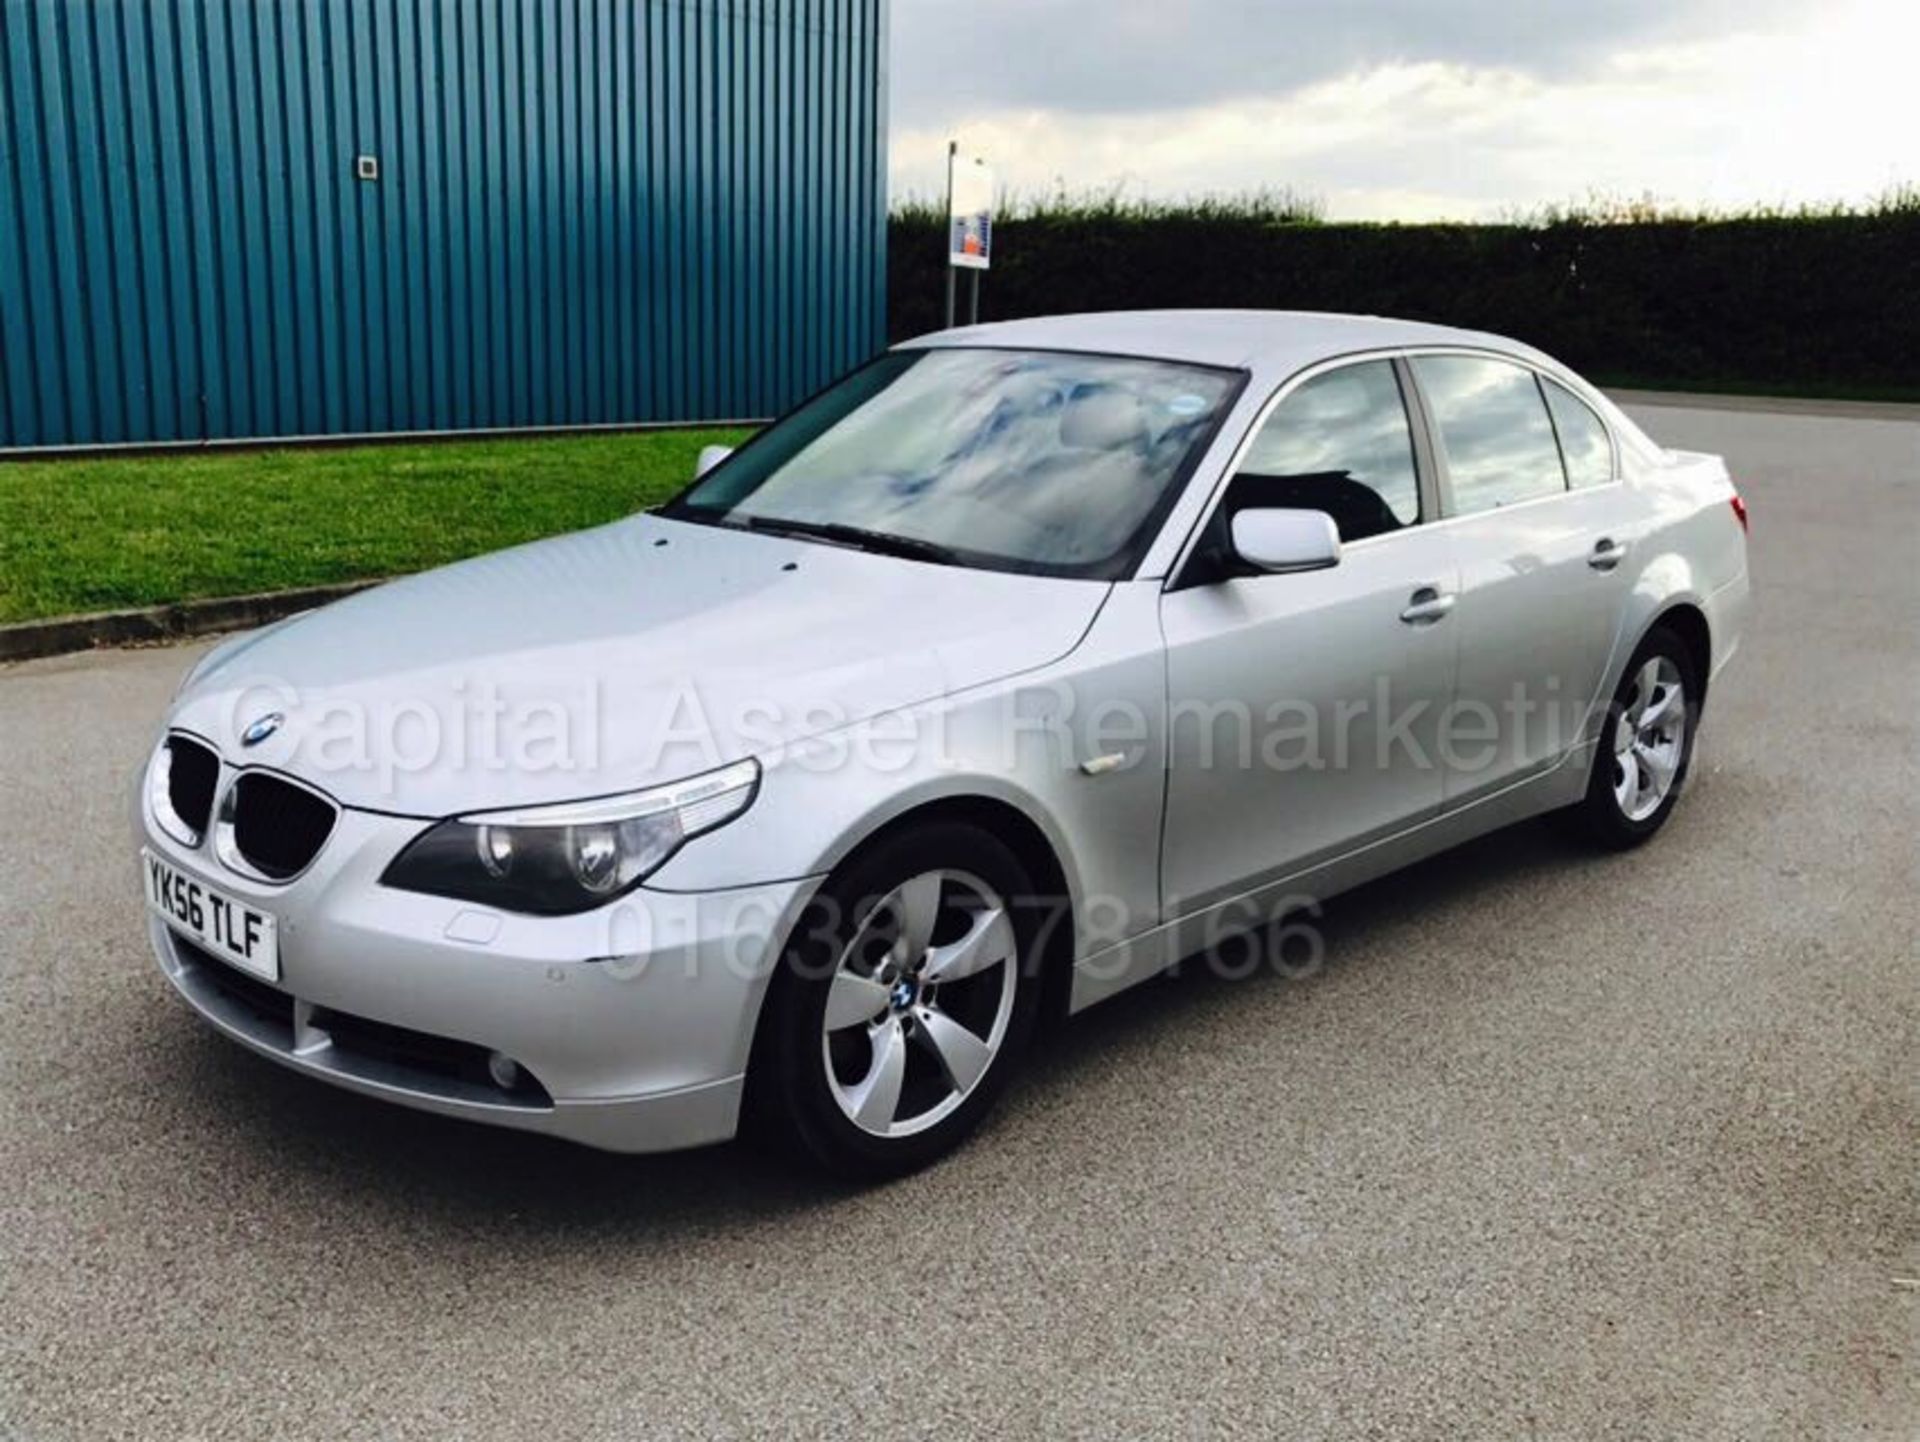 BMW 520D 'SE - SALOON' (2007 MODEL) '2.0 DIESEL - 163 BHP - 6 SPEED' *50 MPG+* (NO VAT - SAVE 20%)